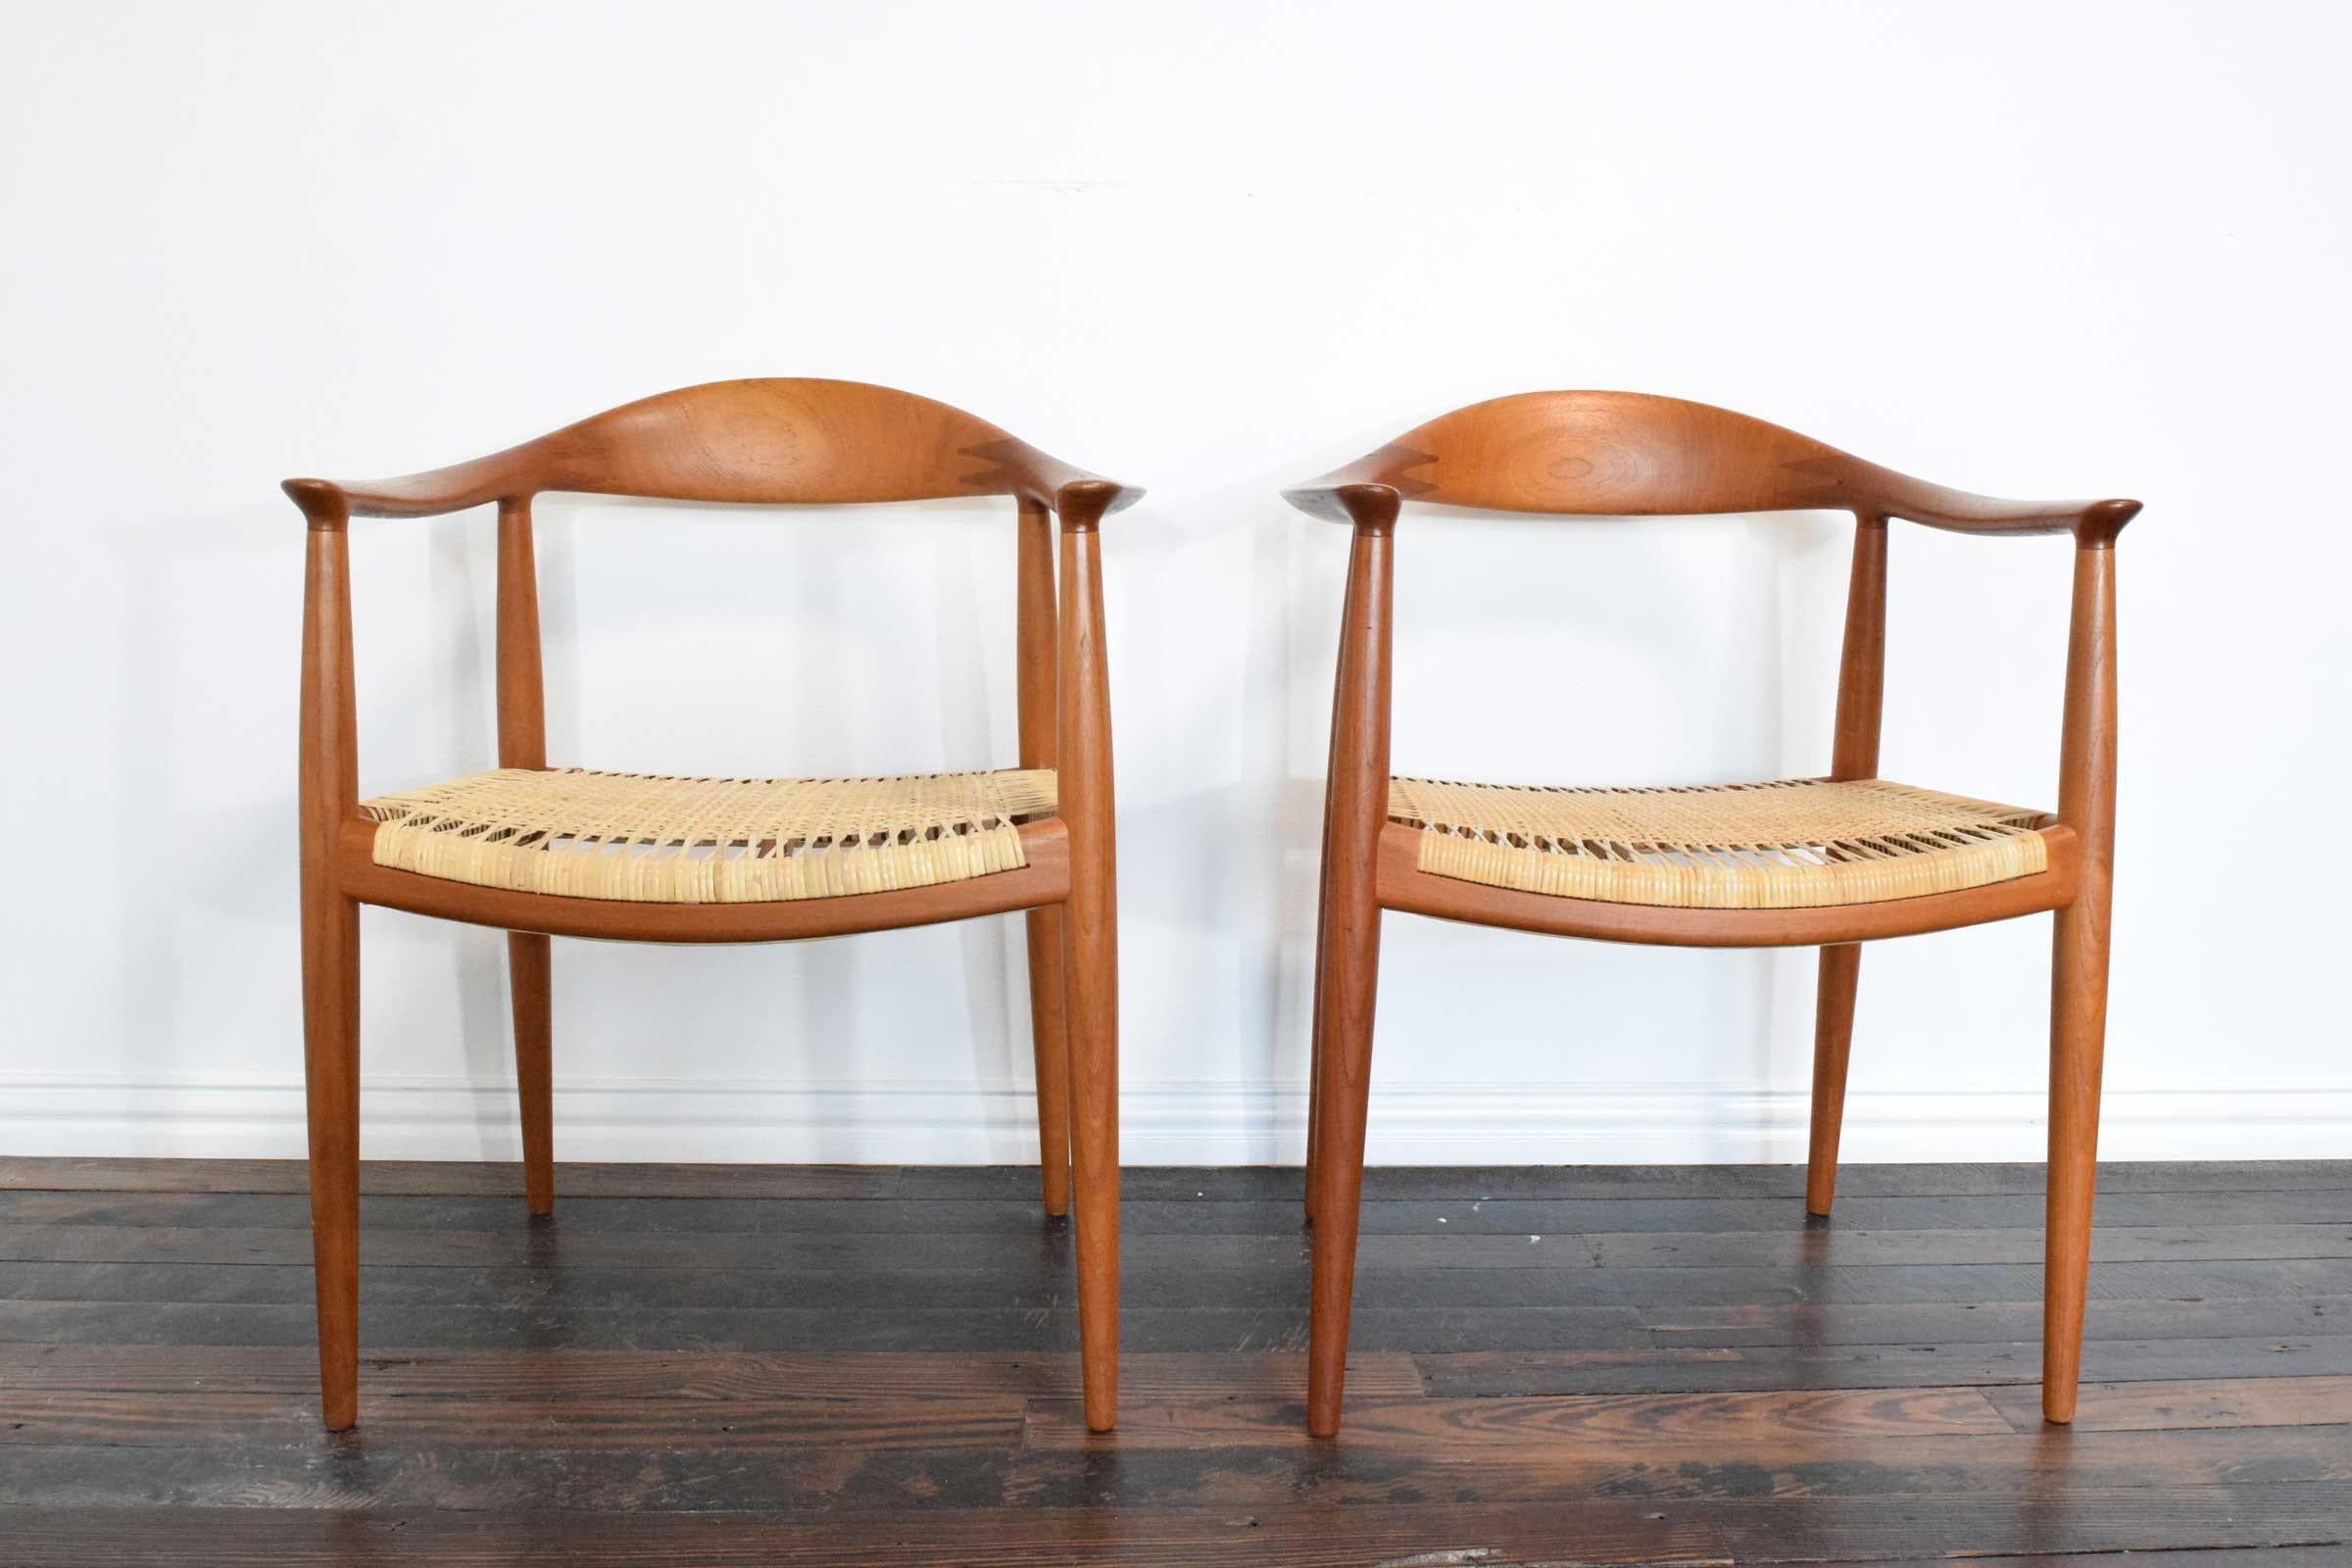 Magnifique paire de chaises rondes de Hans Wegner. Sièges à cannes. Un siège a été remplacé. Les deux se montrent très bien.